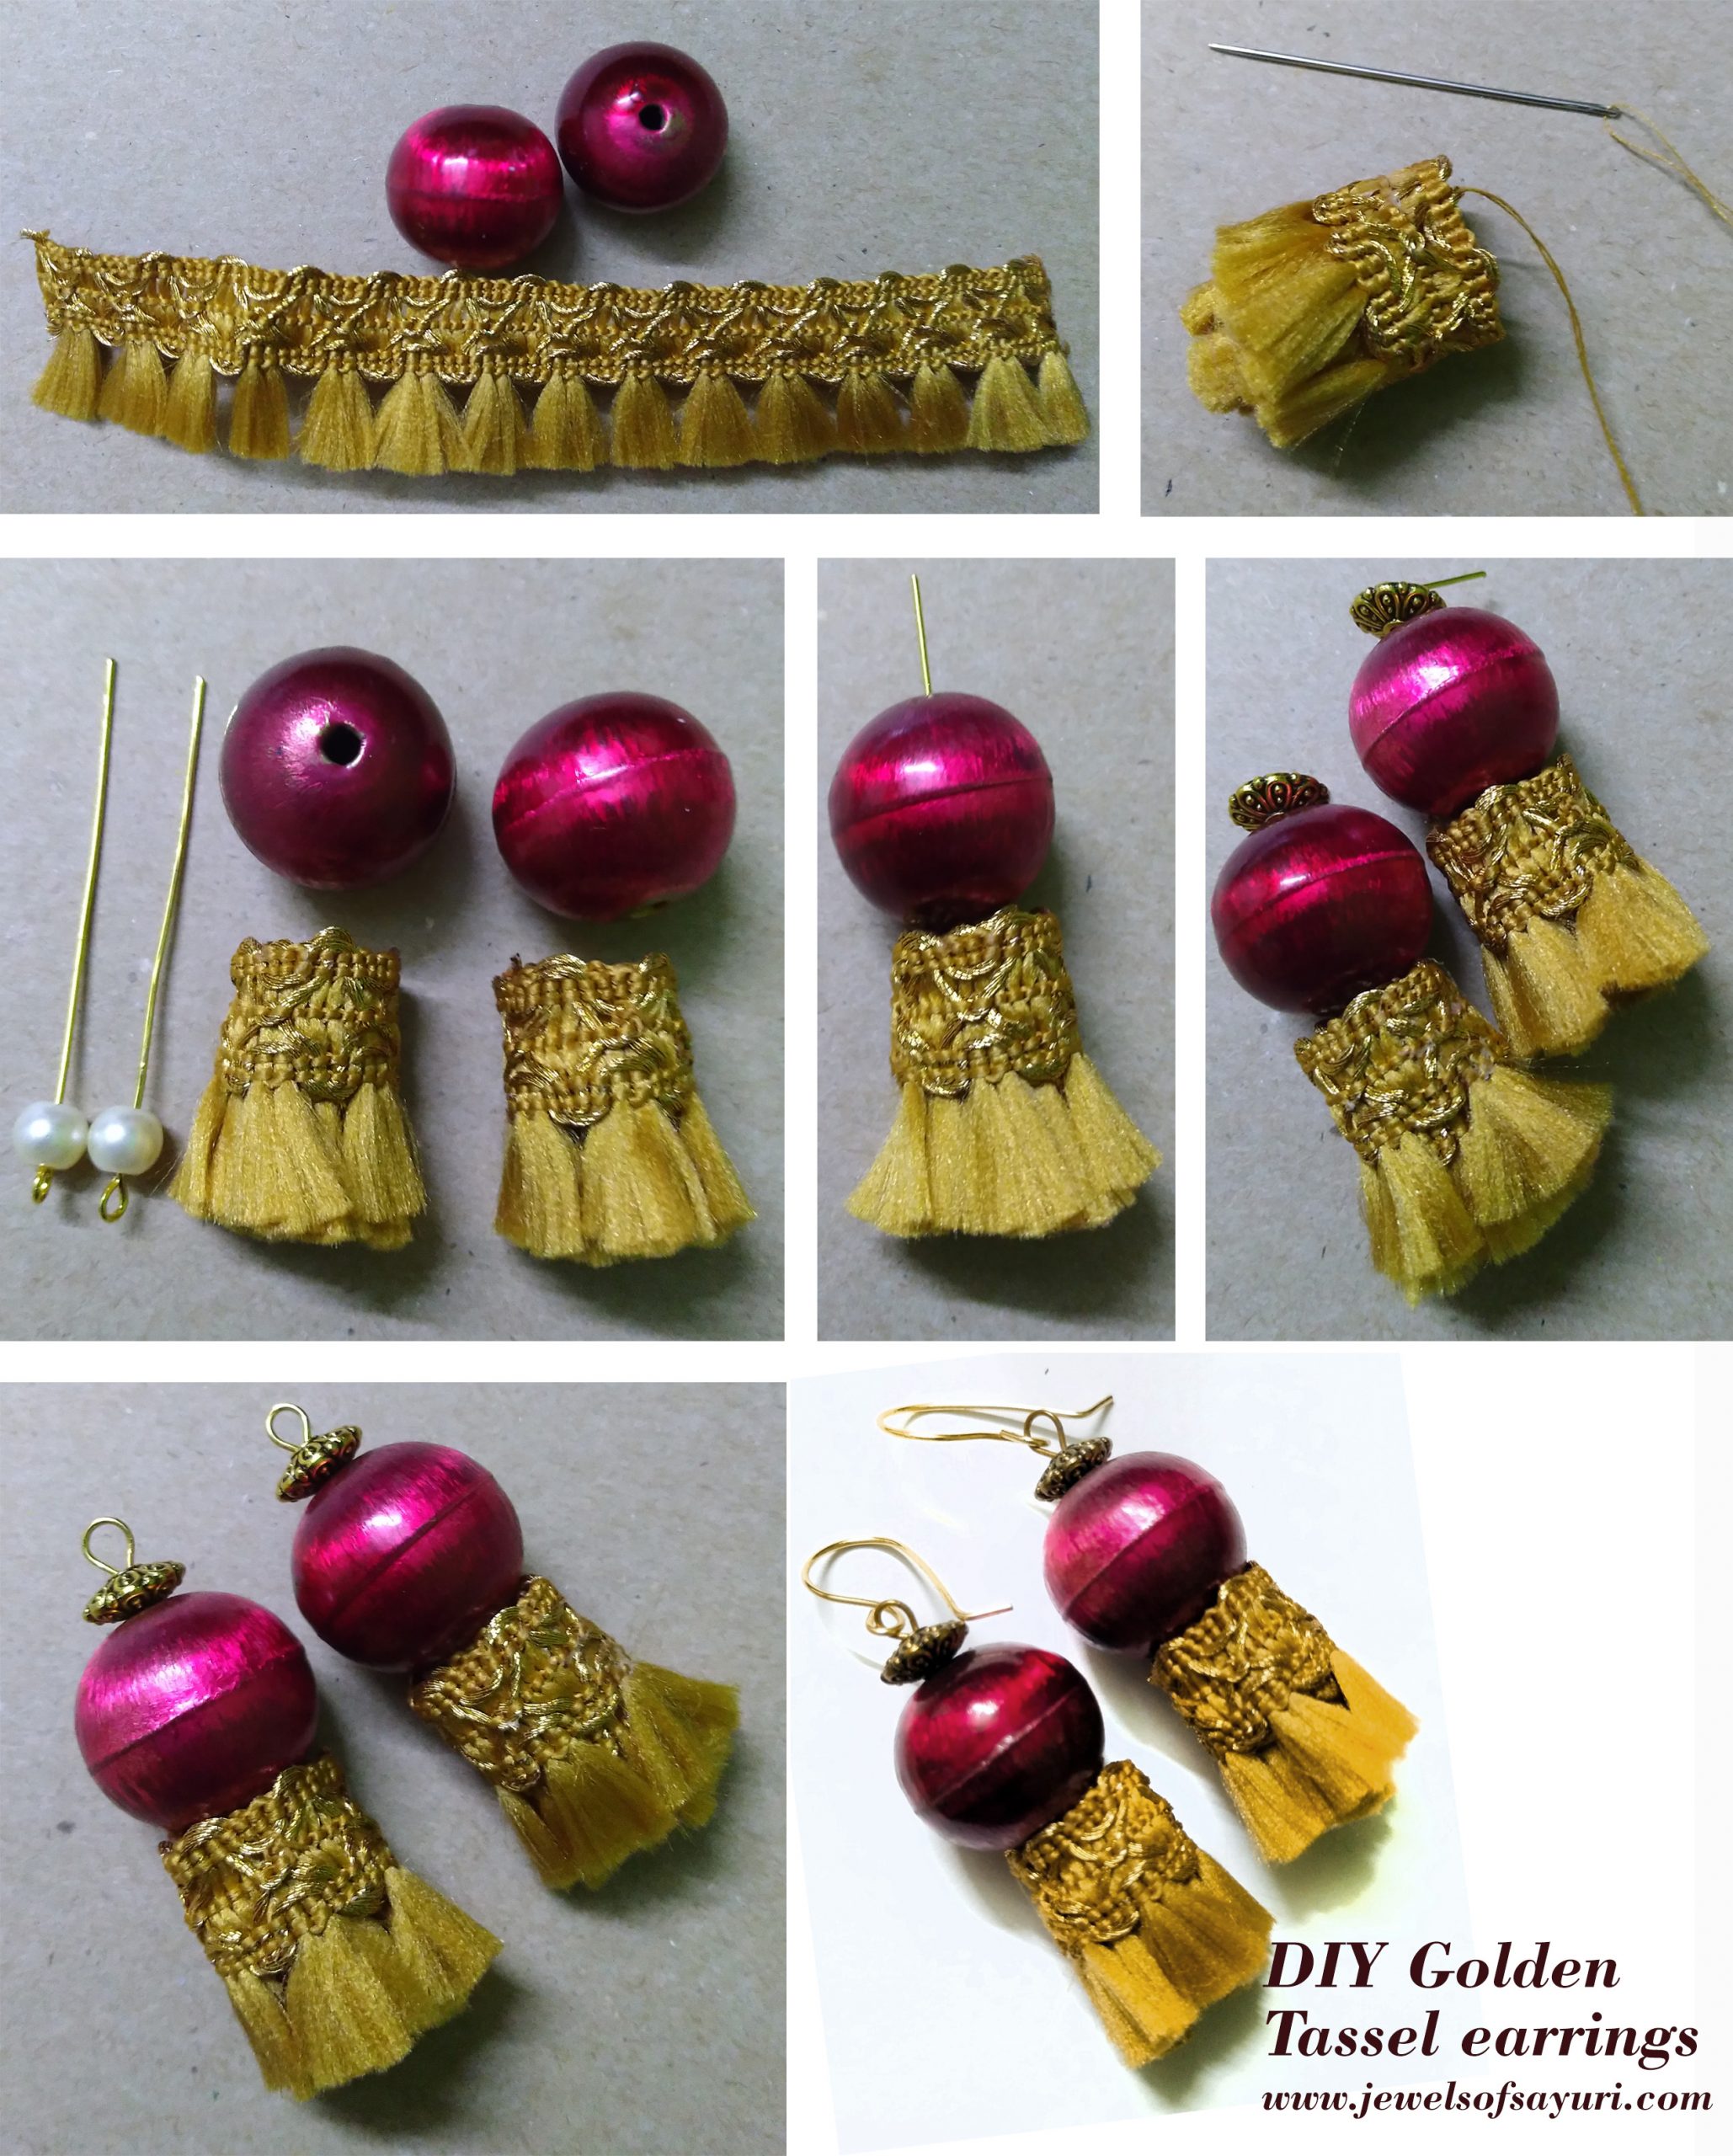 DIY Golden tassel earrings